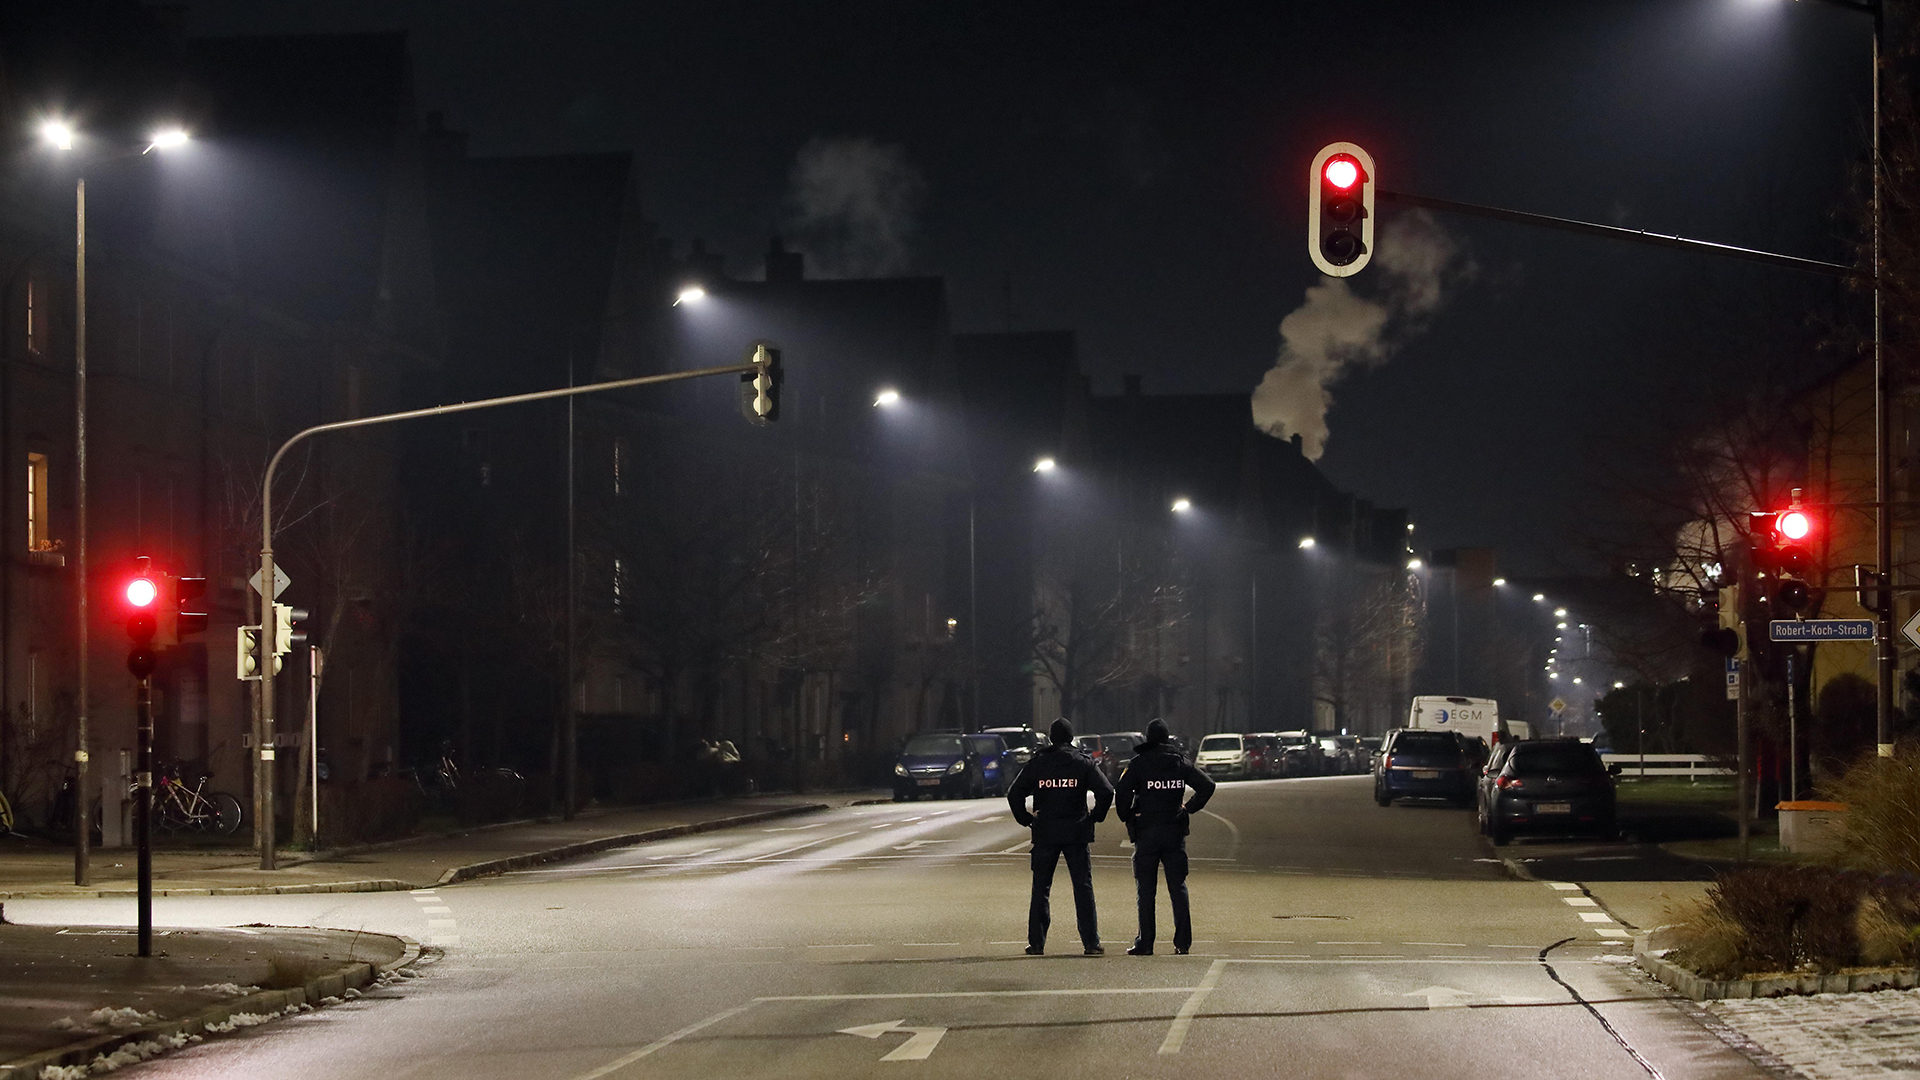 Polizisten kontrollieren eine nächtliche Ausgangssperre in Burghausen, Bayern (Dezember 2020) | picture alliance / imageBROKER